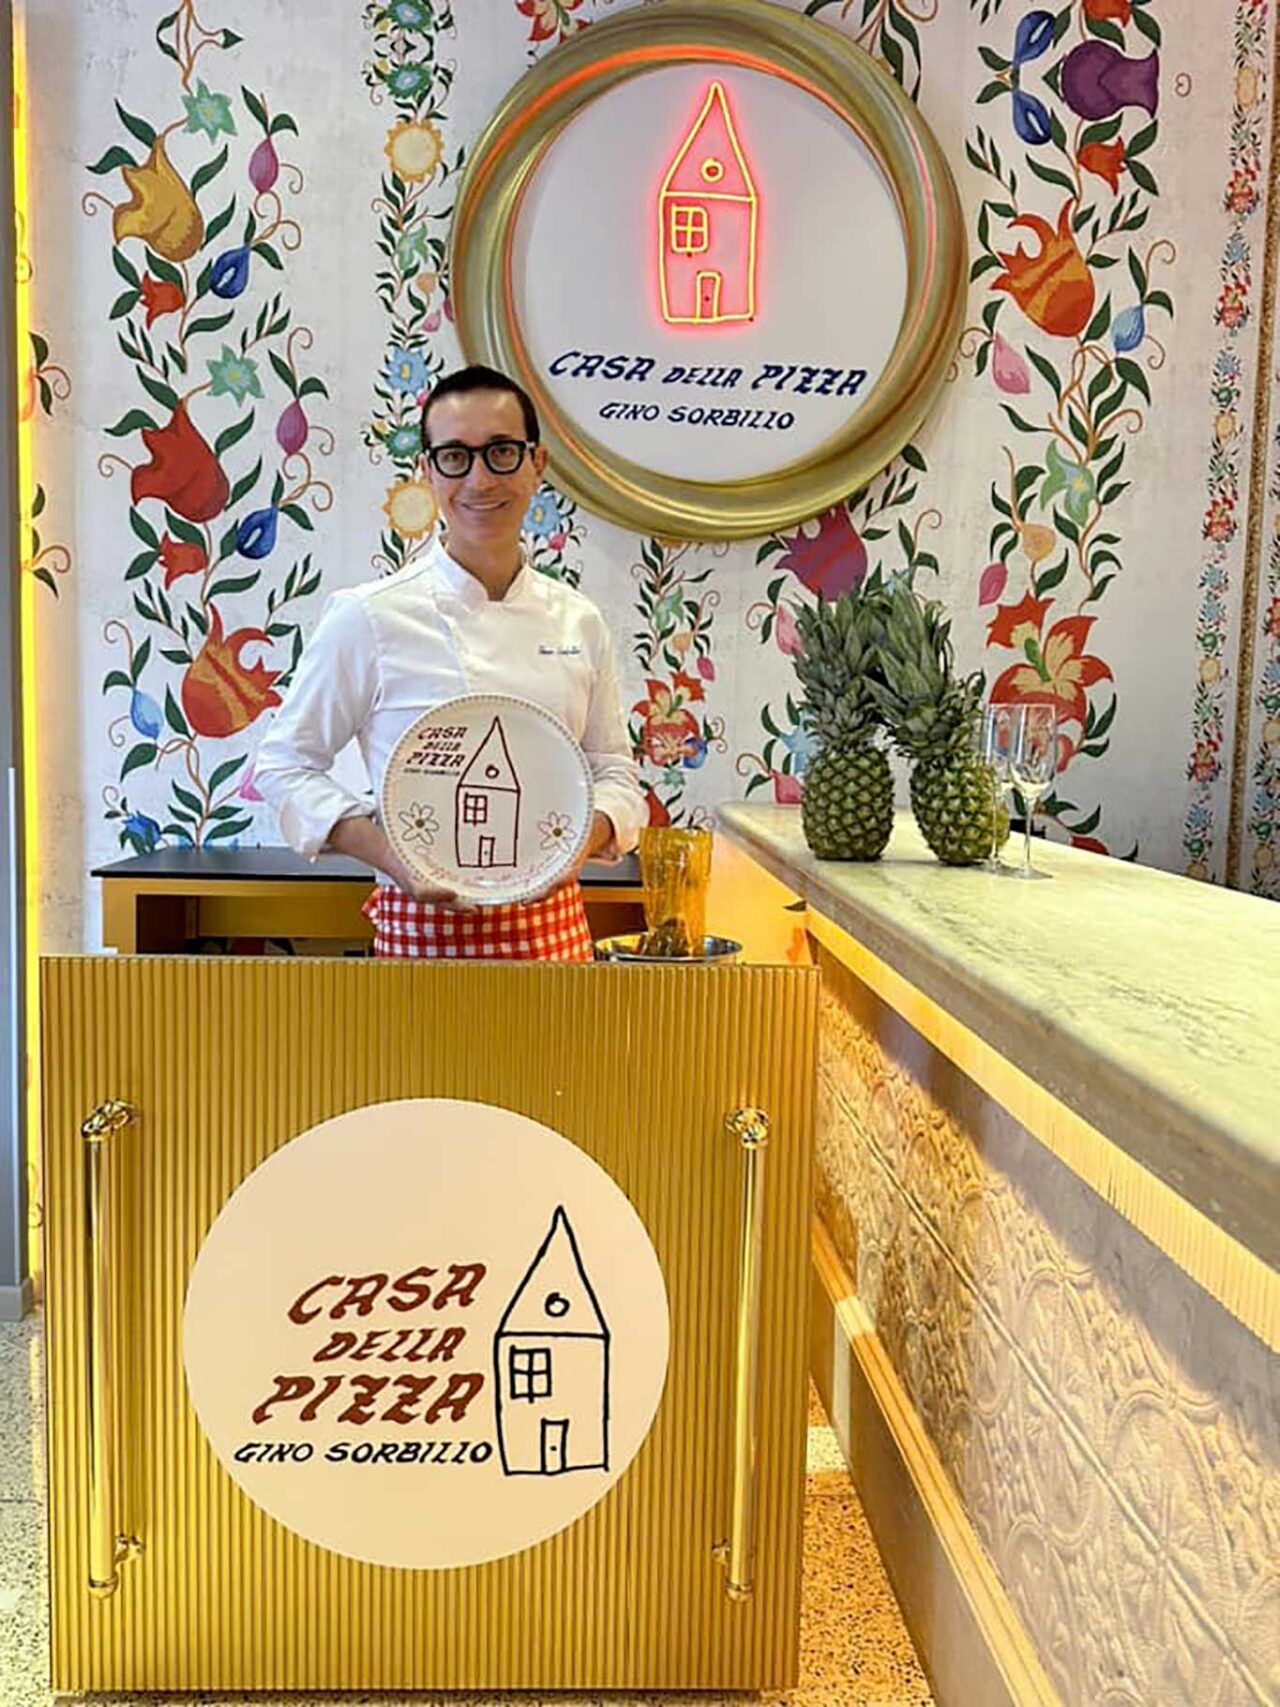 La casa della pizza margherita di Gino Sorbillo